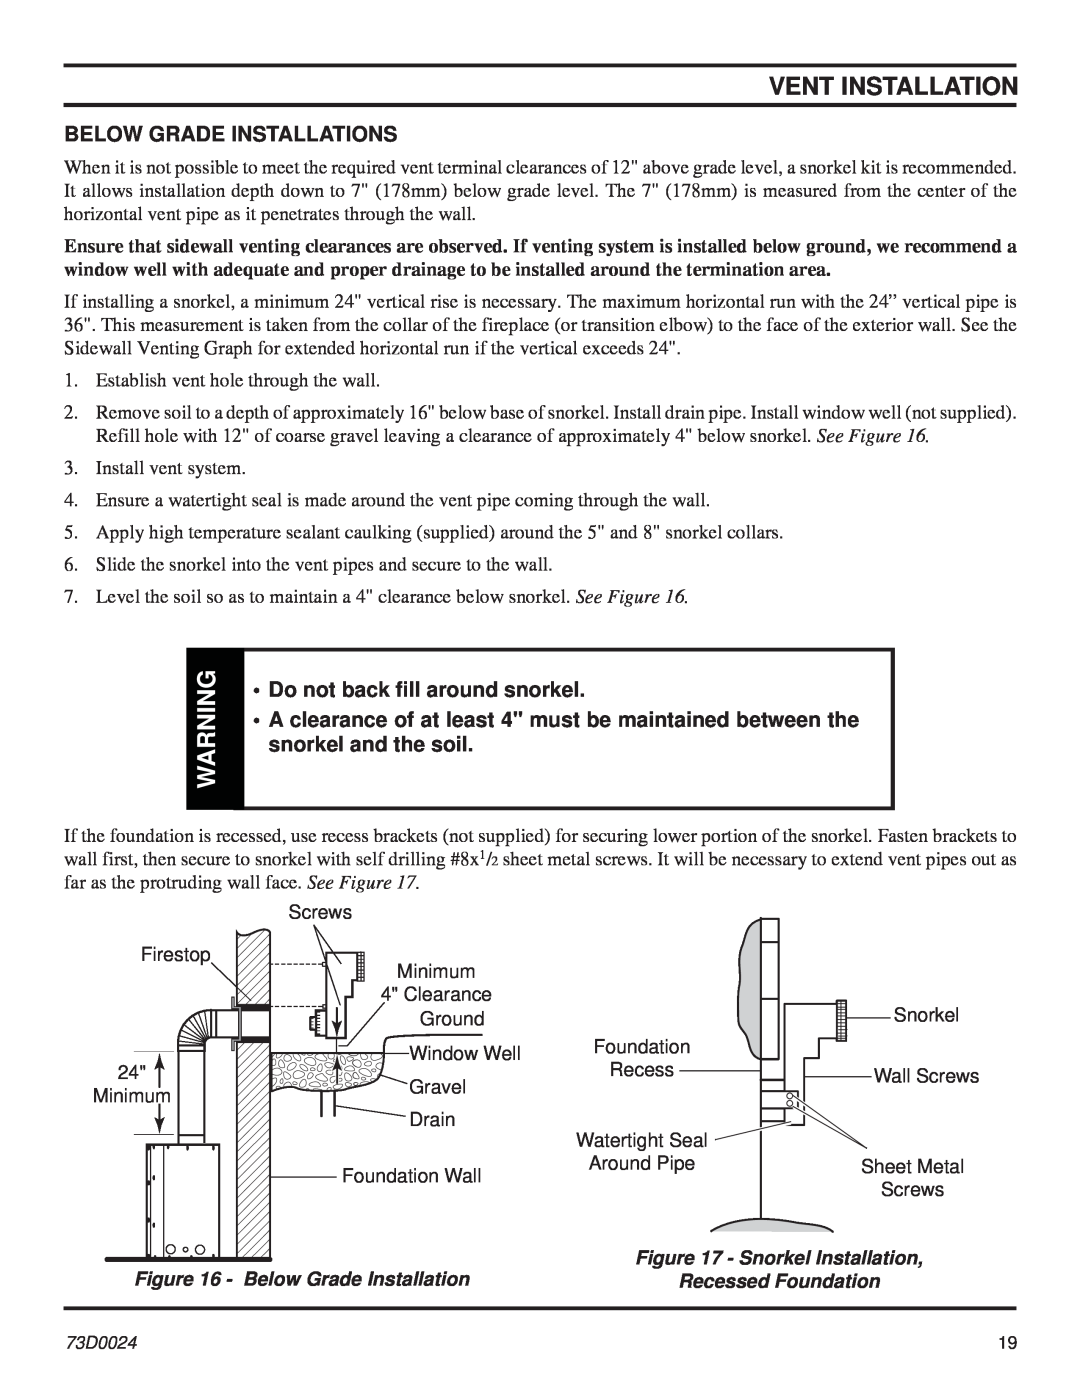 Monessen Hearth KHLDV SERIES manual Below Grade Installations, Do not back ﬁll around snorkel, Vent Installation 